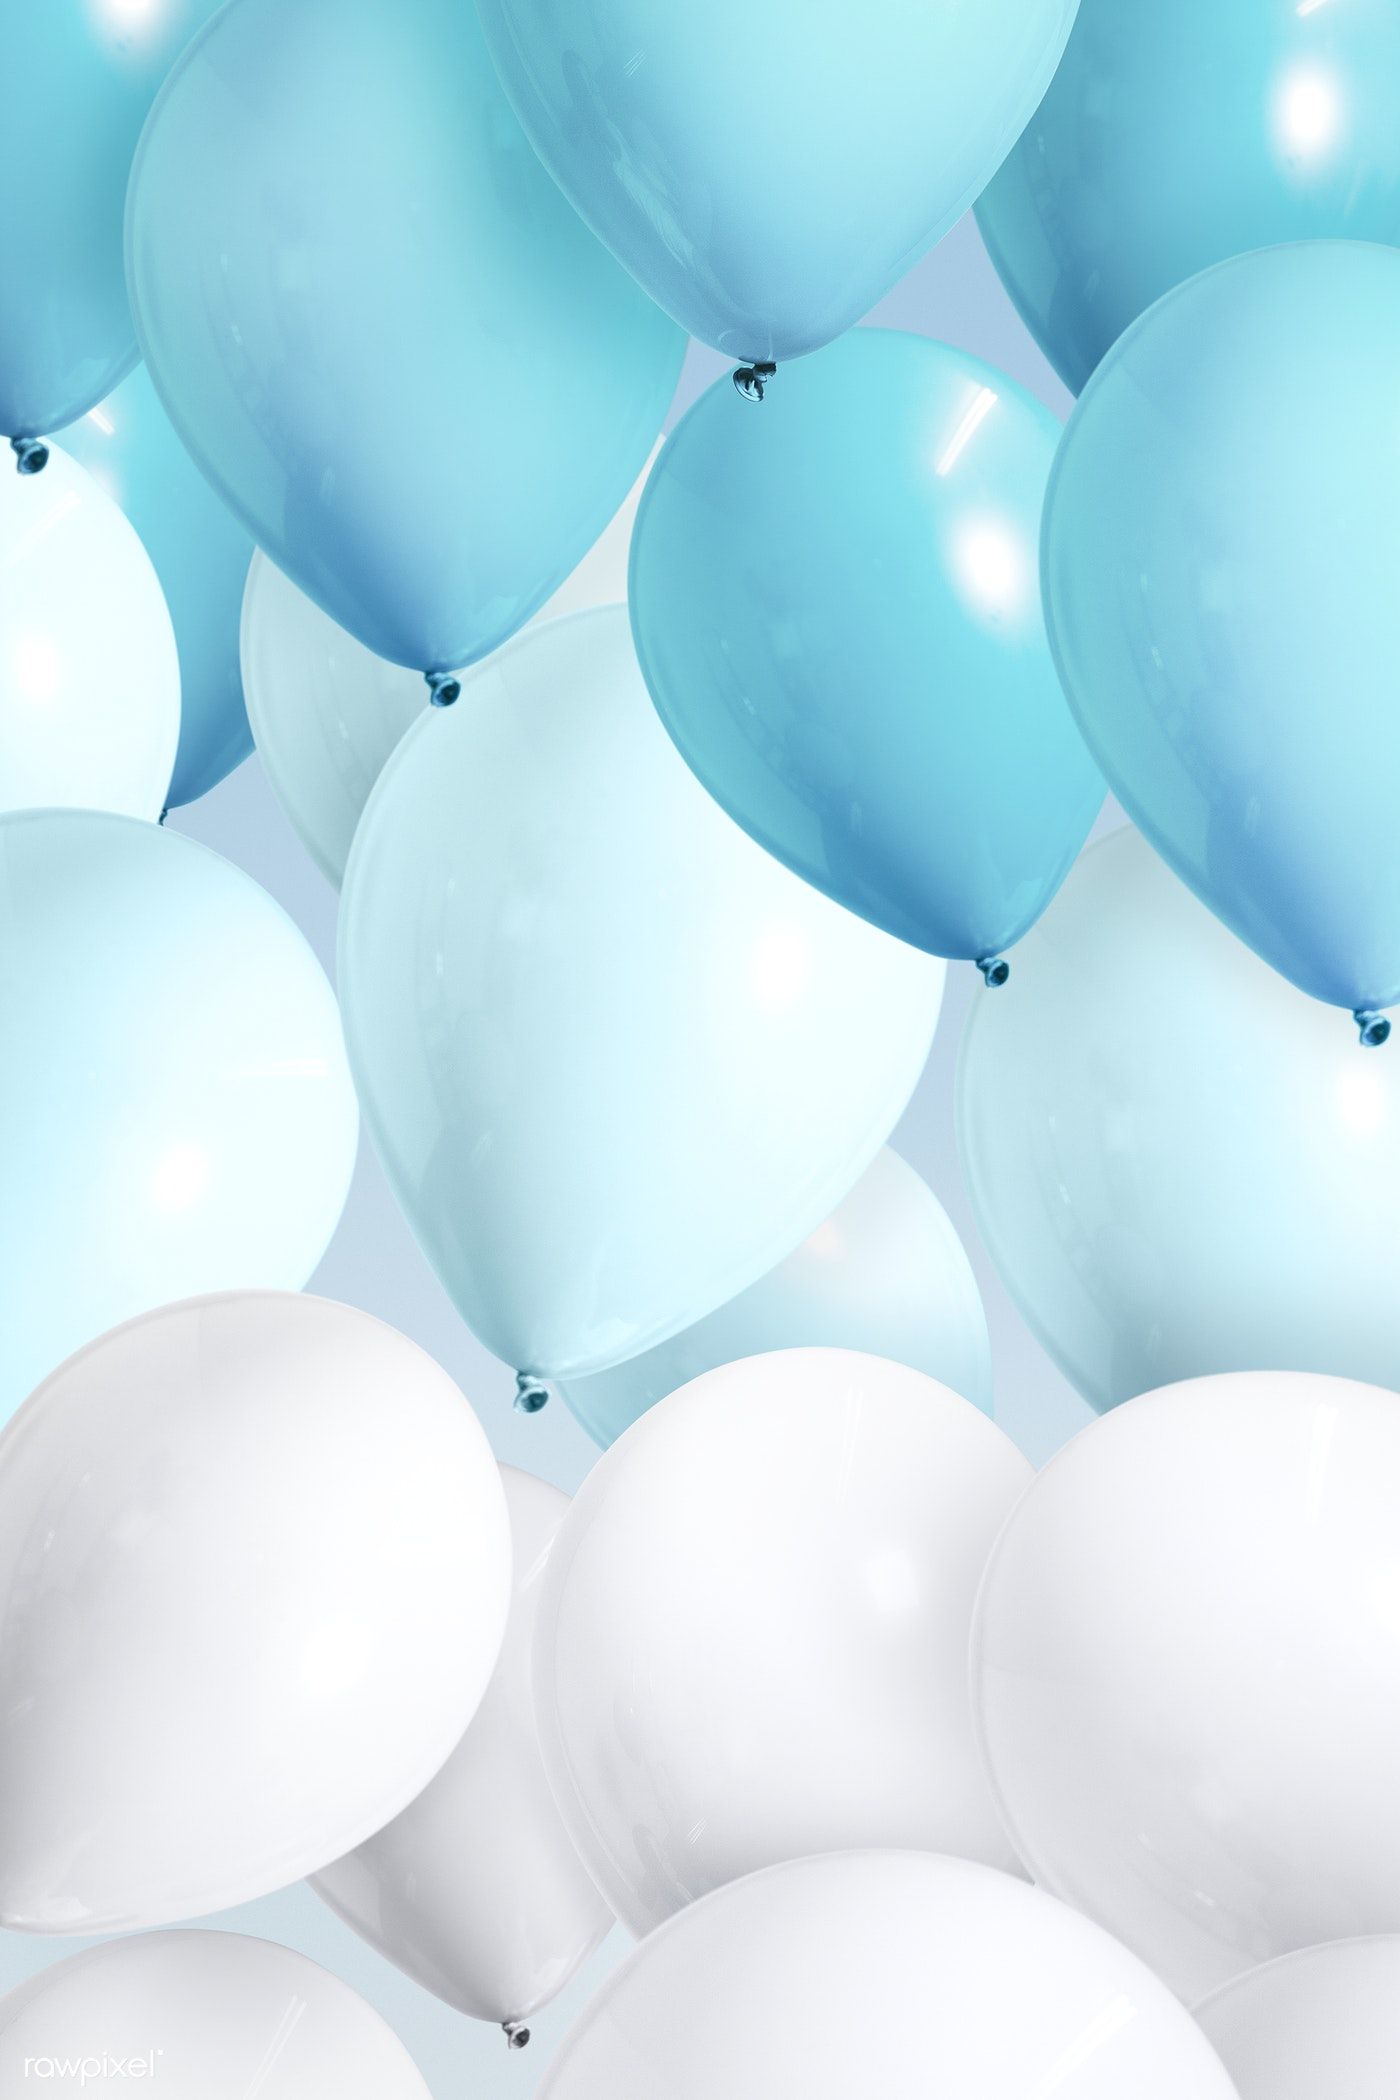  Luftballons Hintergrundbild 1400x2100. Aesthetic Balloons Wallpaper